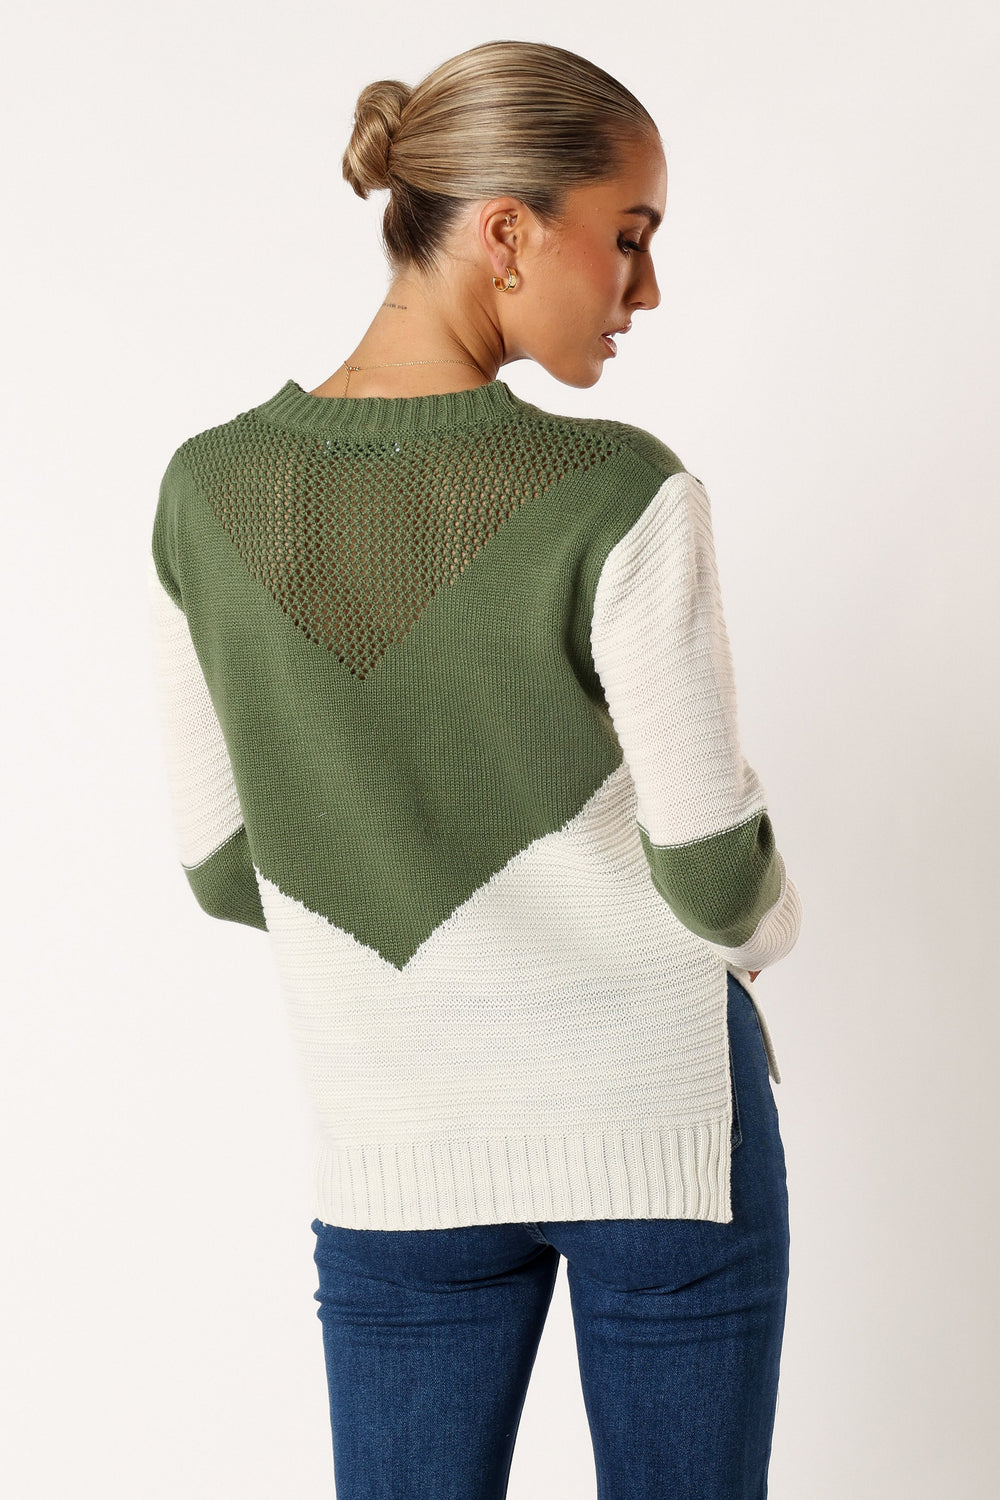 KNITWEAR @Lauryn Knit Sweater - Ivory/Olive